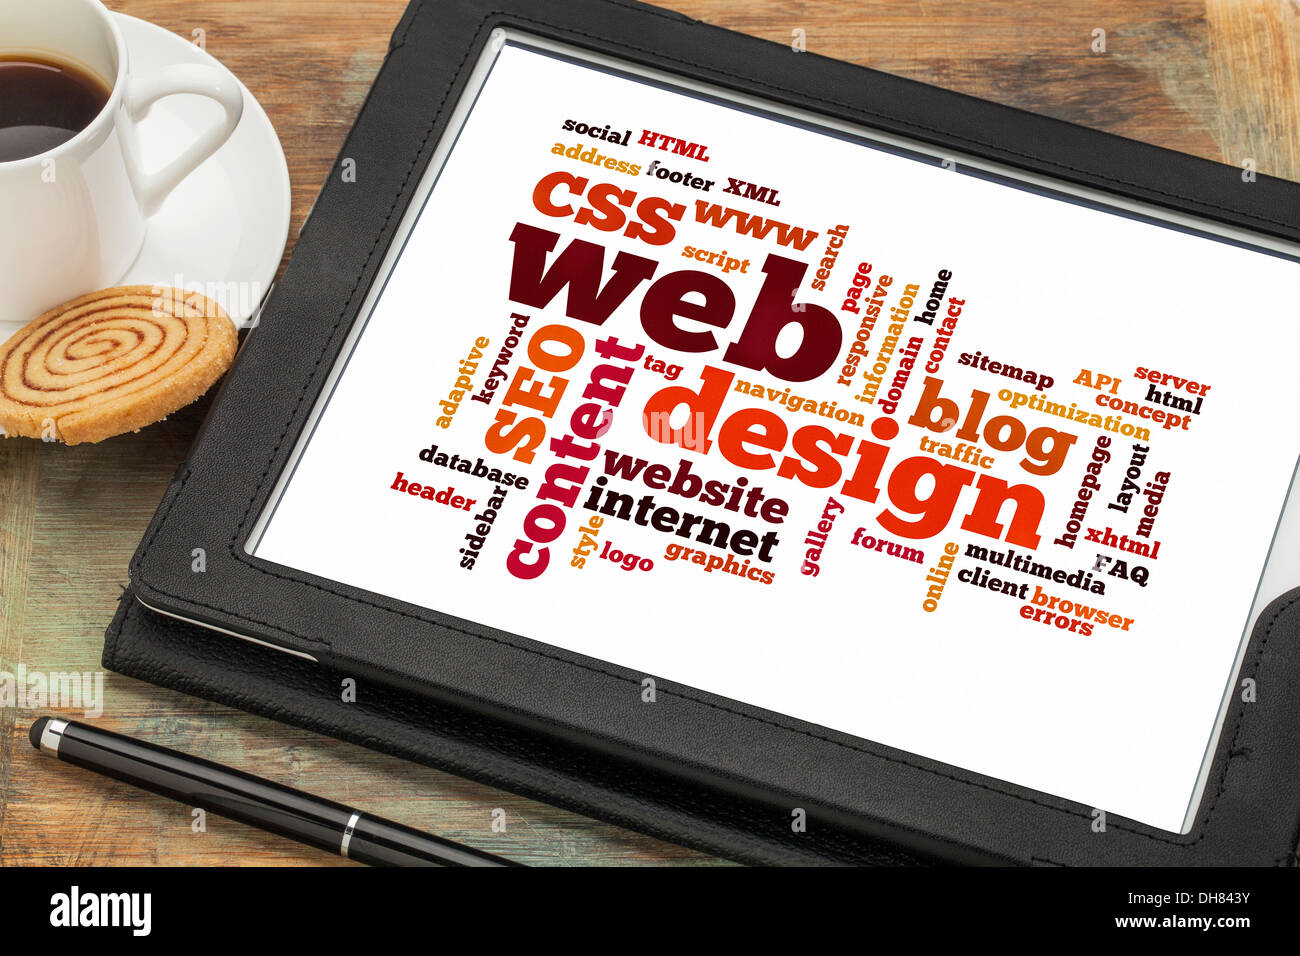 Nuvola di parole o i tag relativi al web o sito web design su una tavoletta digitale con una tazza di caffè Foto Stock